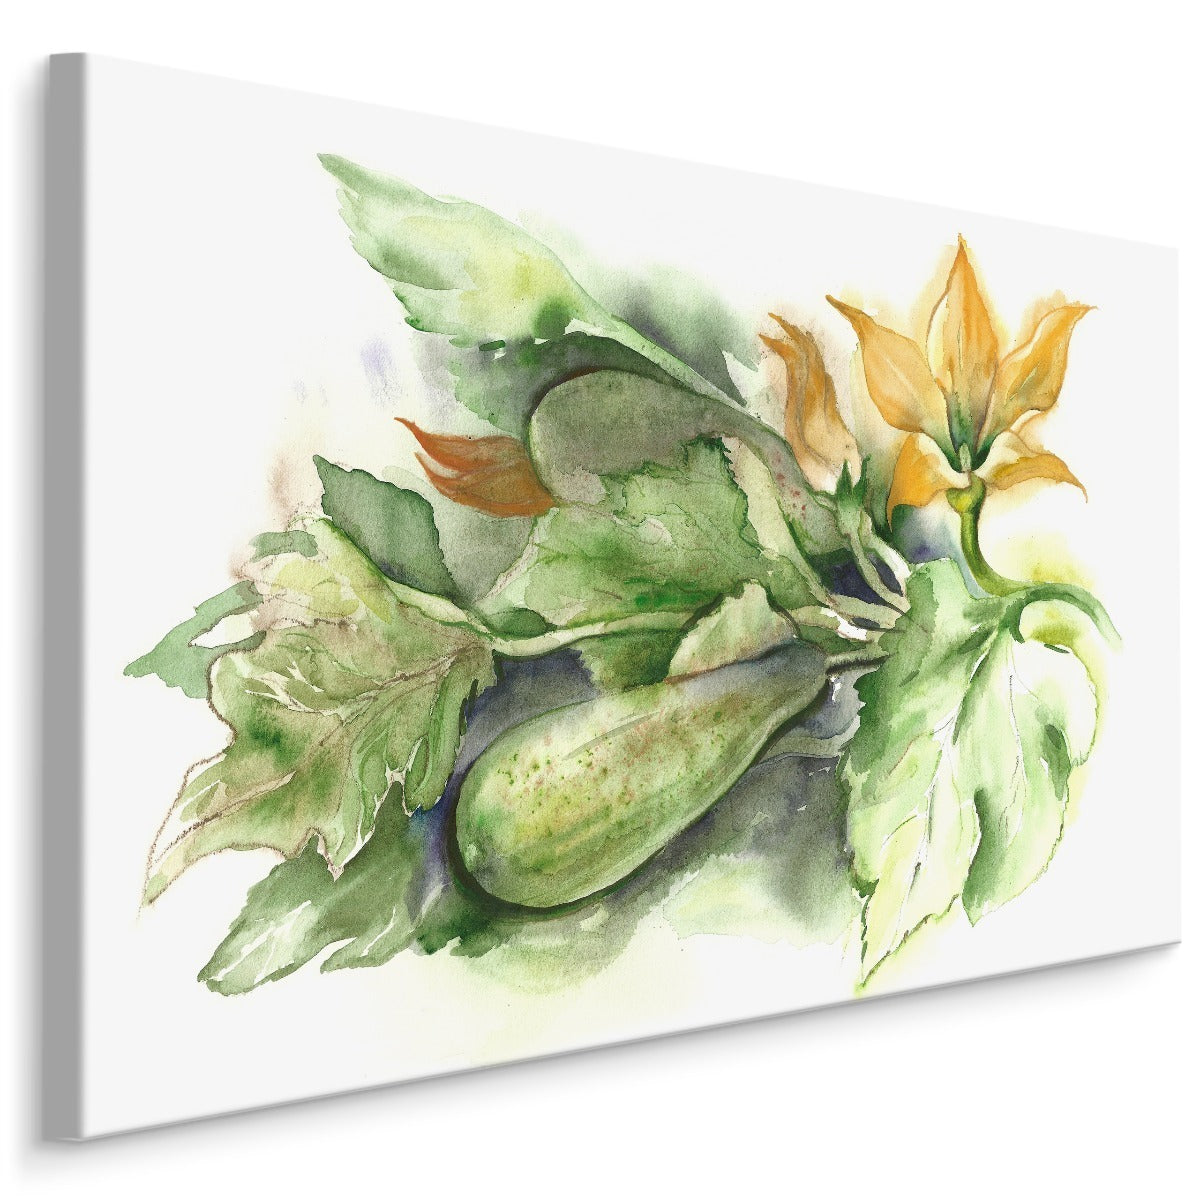 Zucchini med blomster malt med akvarell